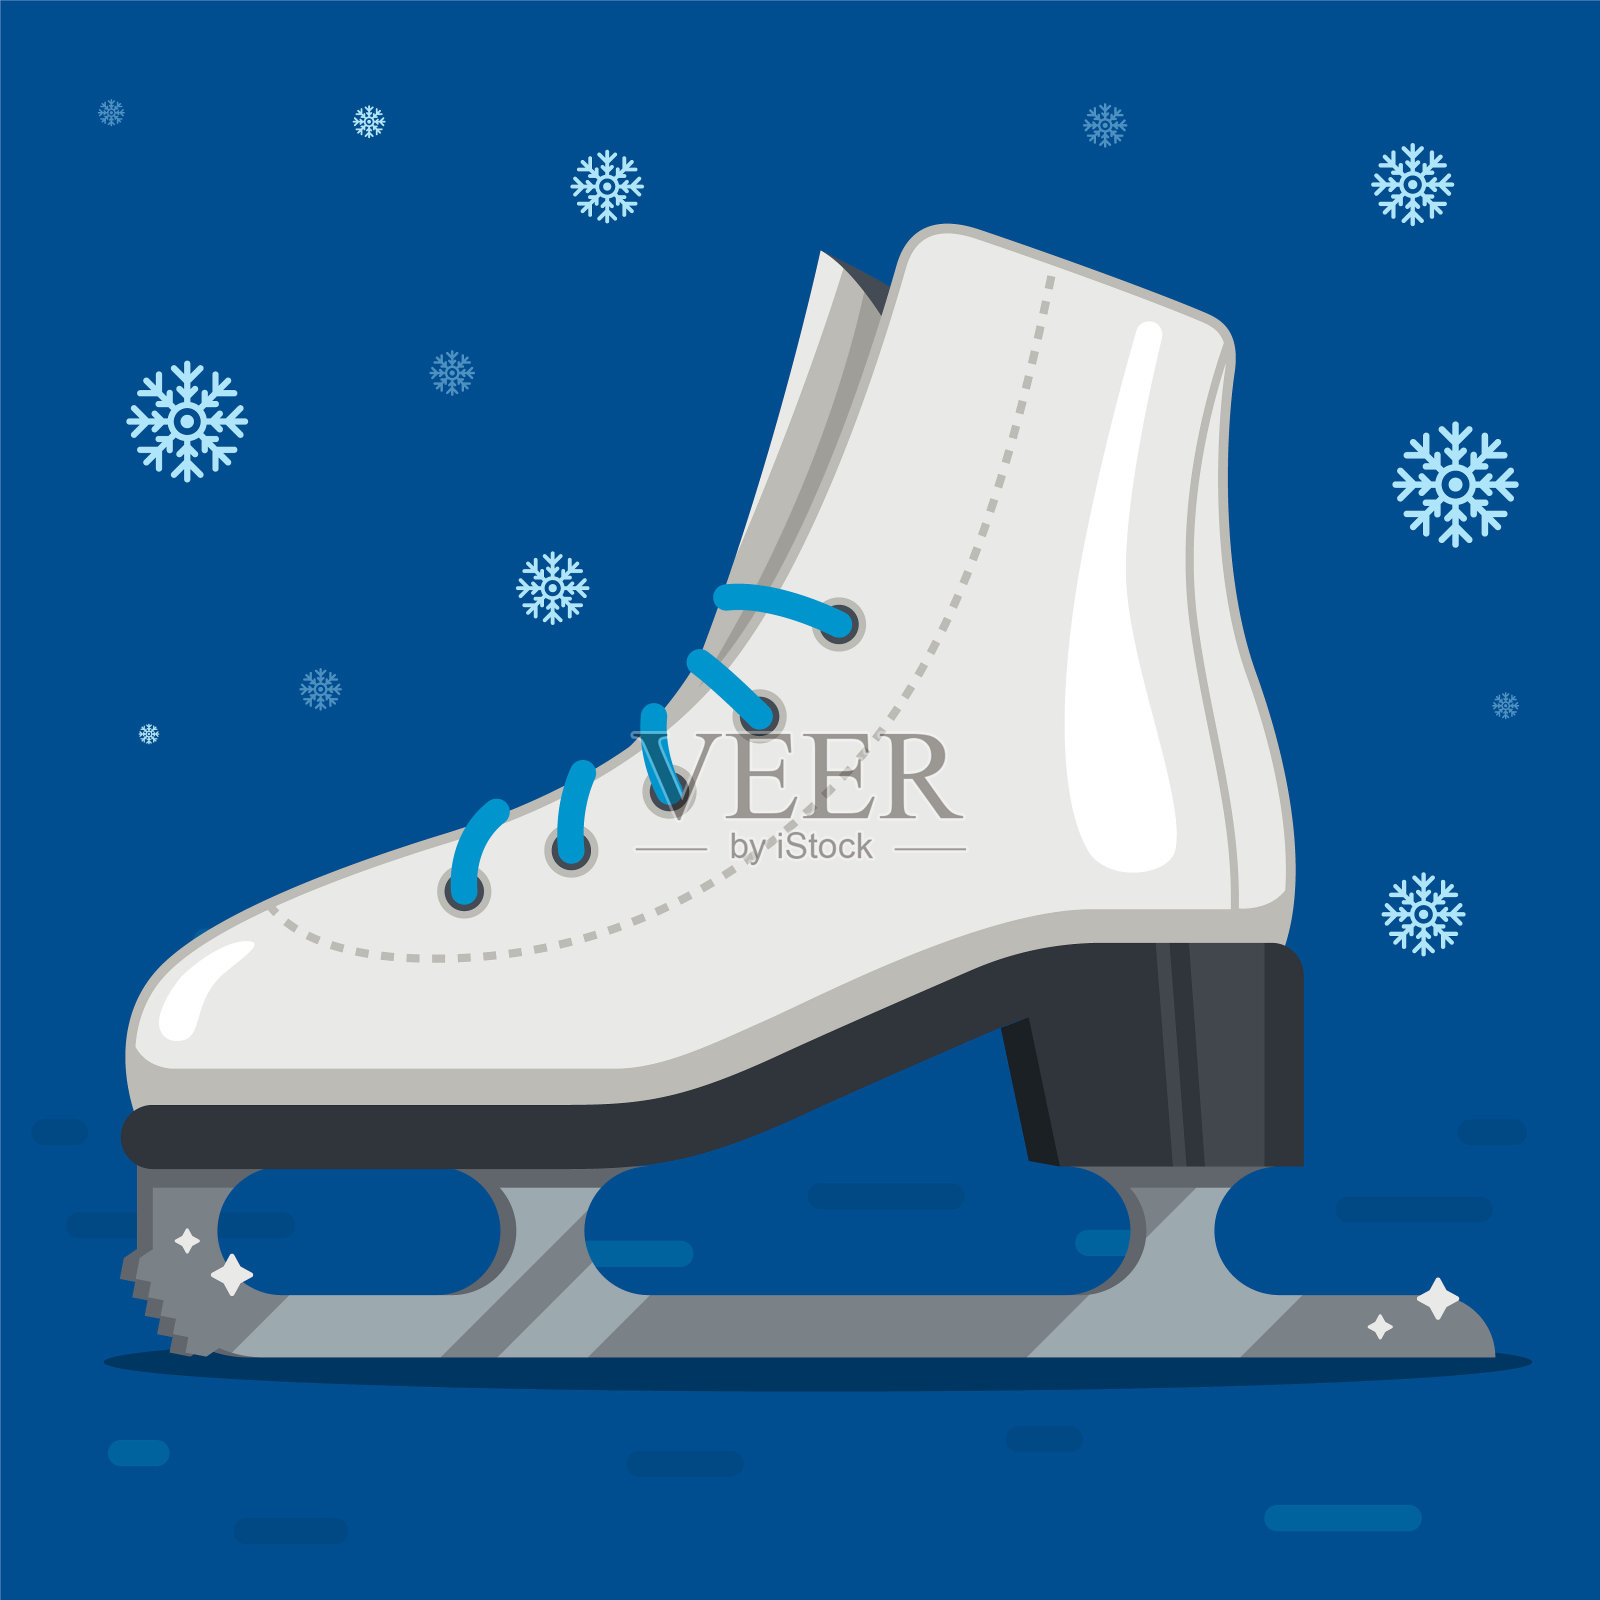 冬天用来进行花样滑冰的白色溜冰鞋。户外溜冰场插画图片素材